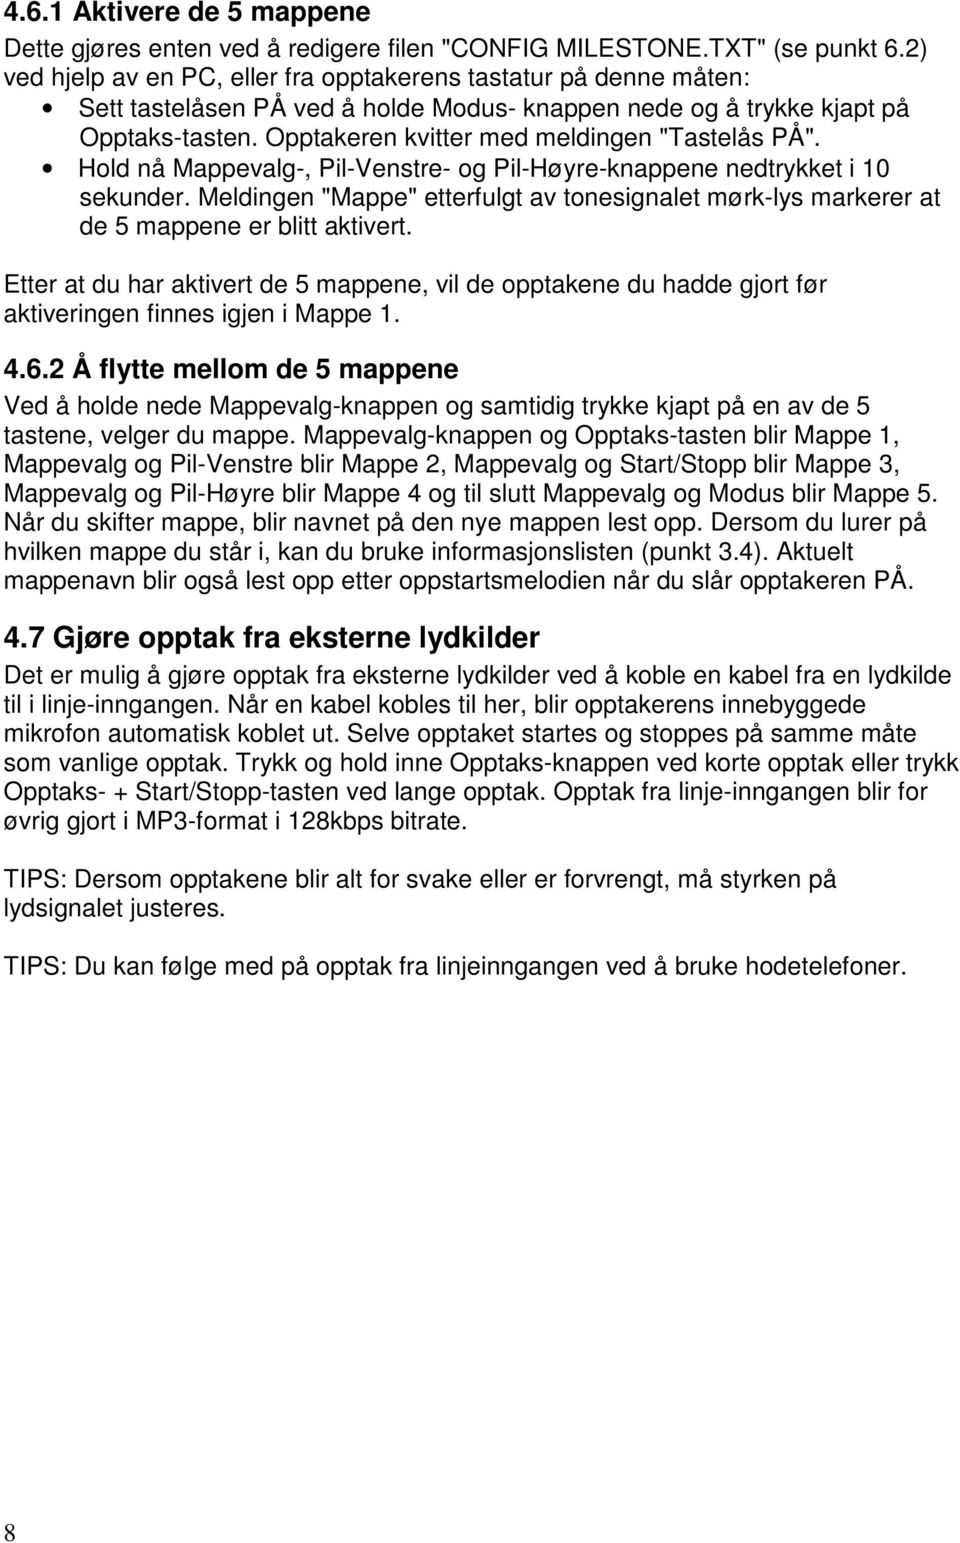 Opptakeren kvitter med meldingen "Tastelås PÅ". Hold nå Mappevalg-, Pil-Venstre- og Pil-Høyre-knappene nedtrykket i 10 sekunder.